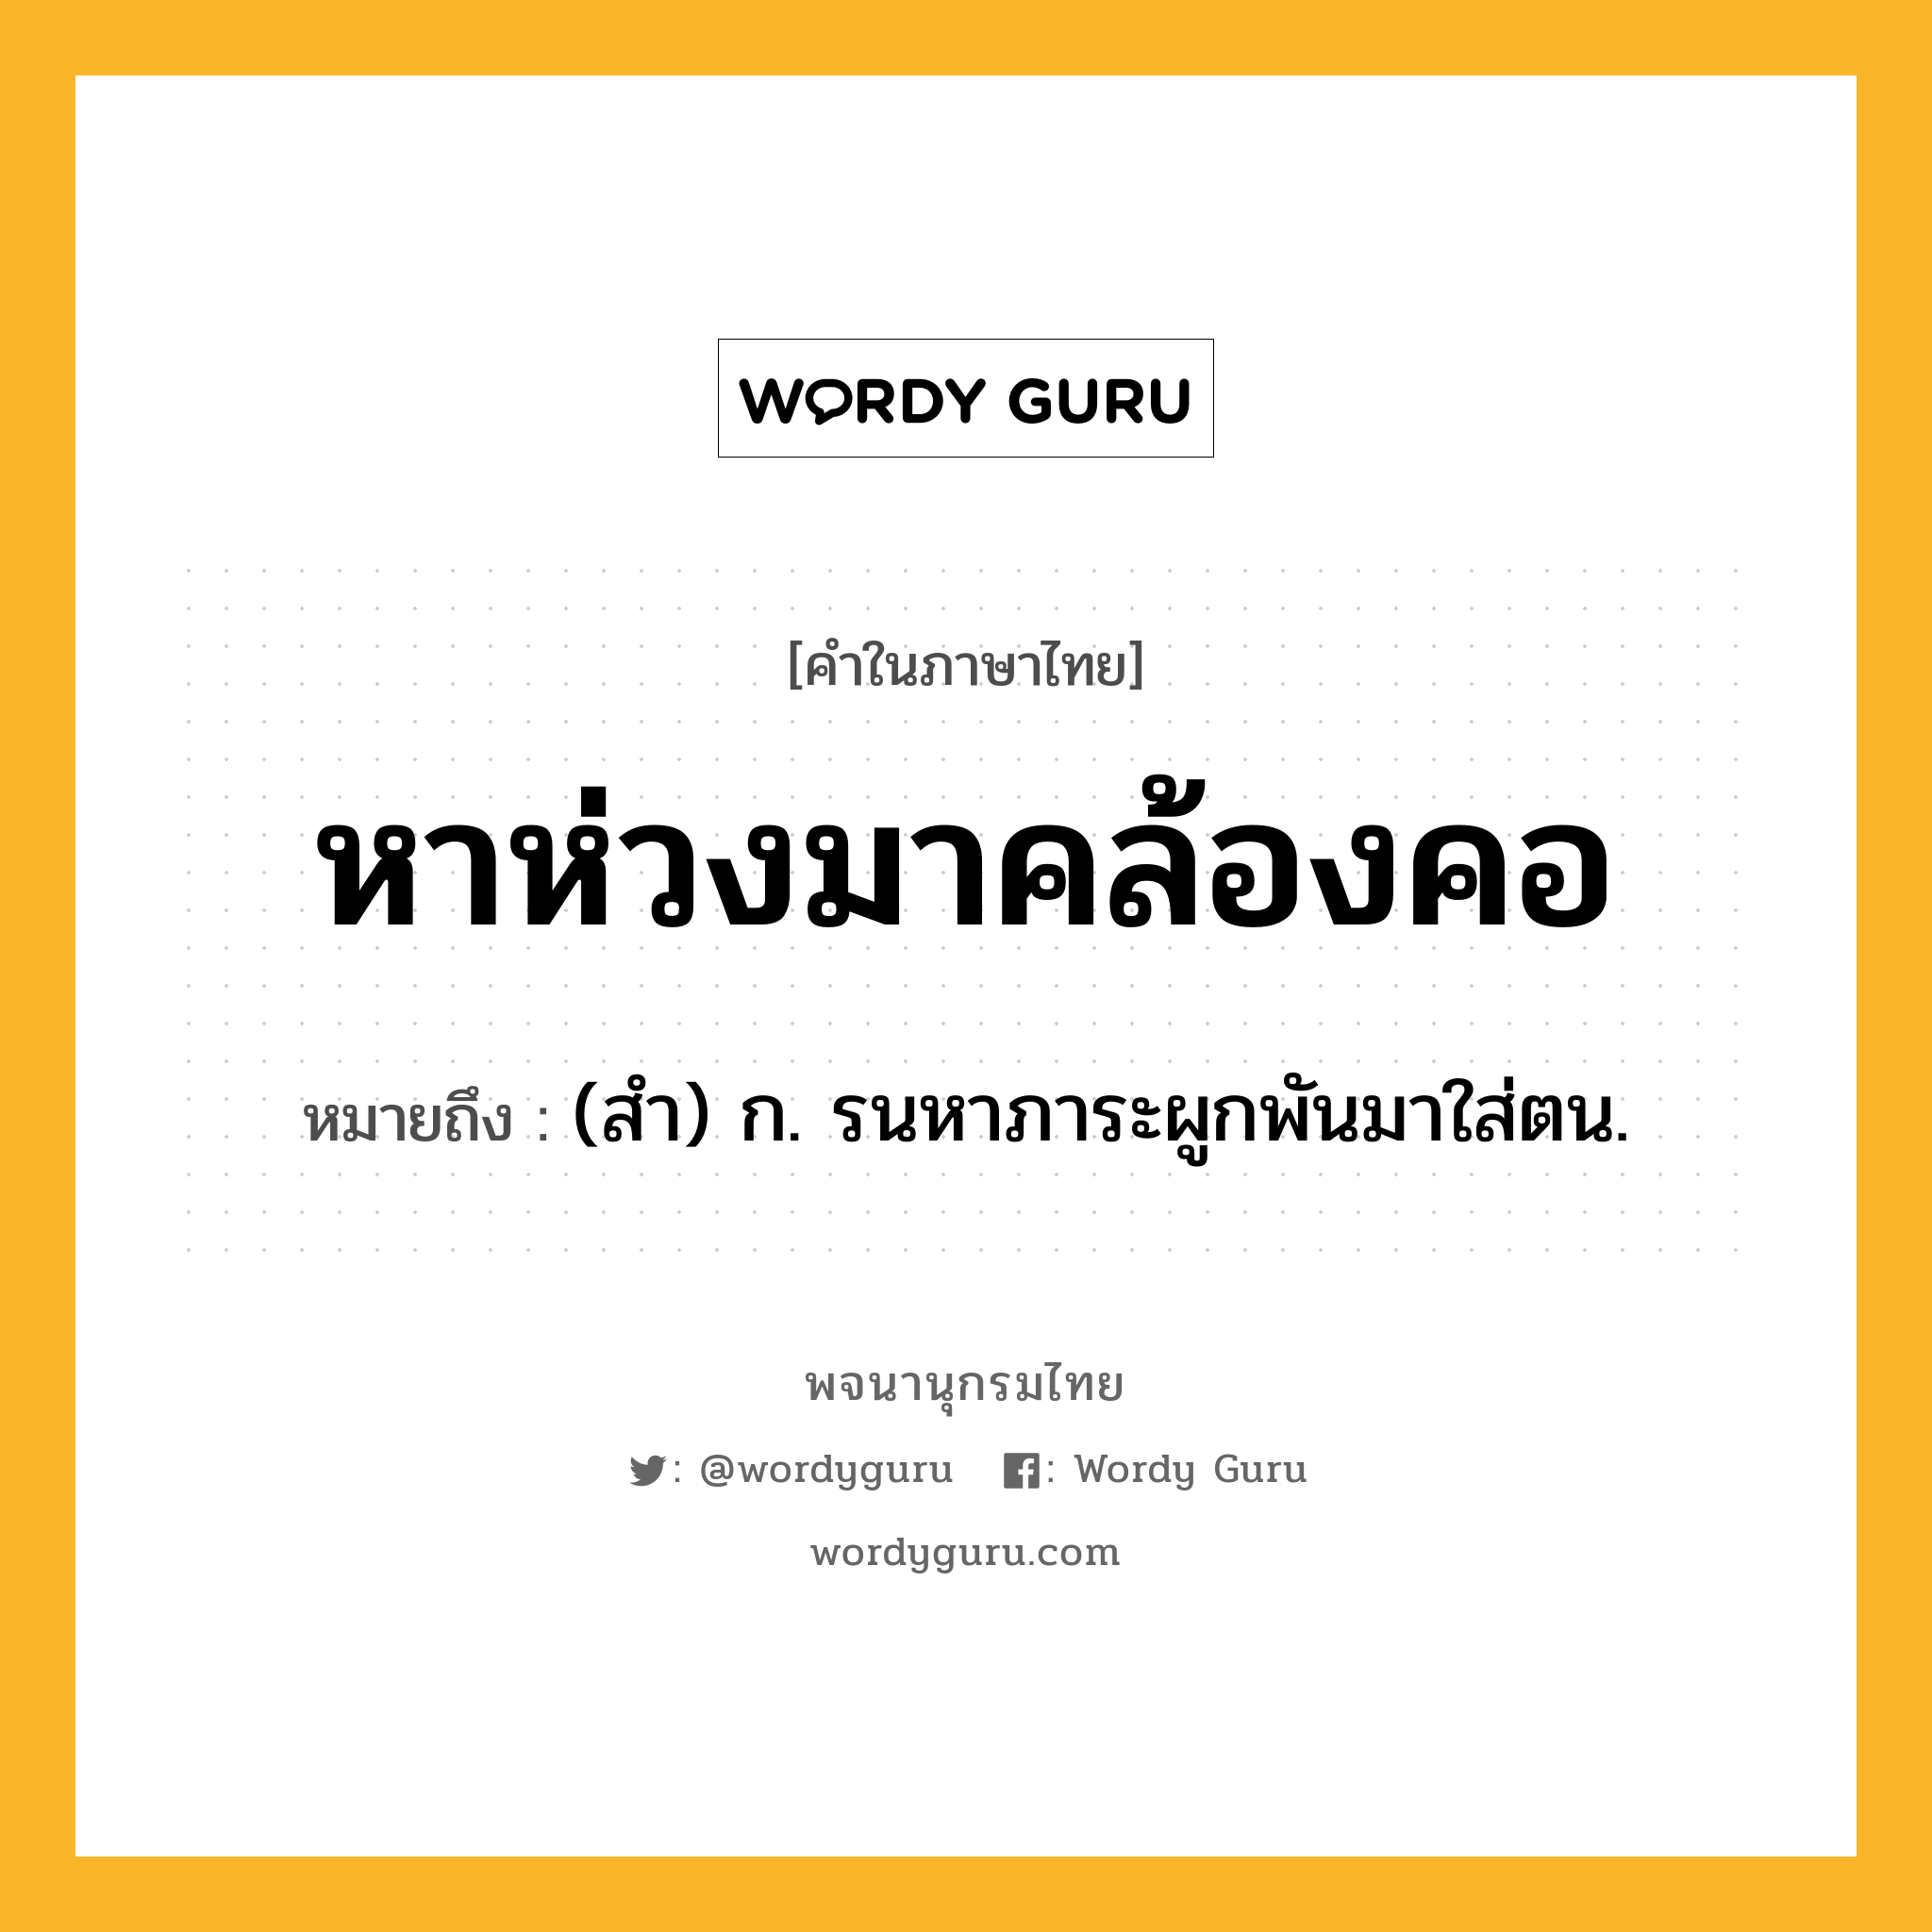 หาห่วงมาคล้องคอ หมายถึงอะไร?, คำในภาษาไทย หาห่วงมาคล้องคอ หมายถึง (สํา) ก. รนหาภาระผูกพันมาใส่ตน.